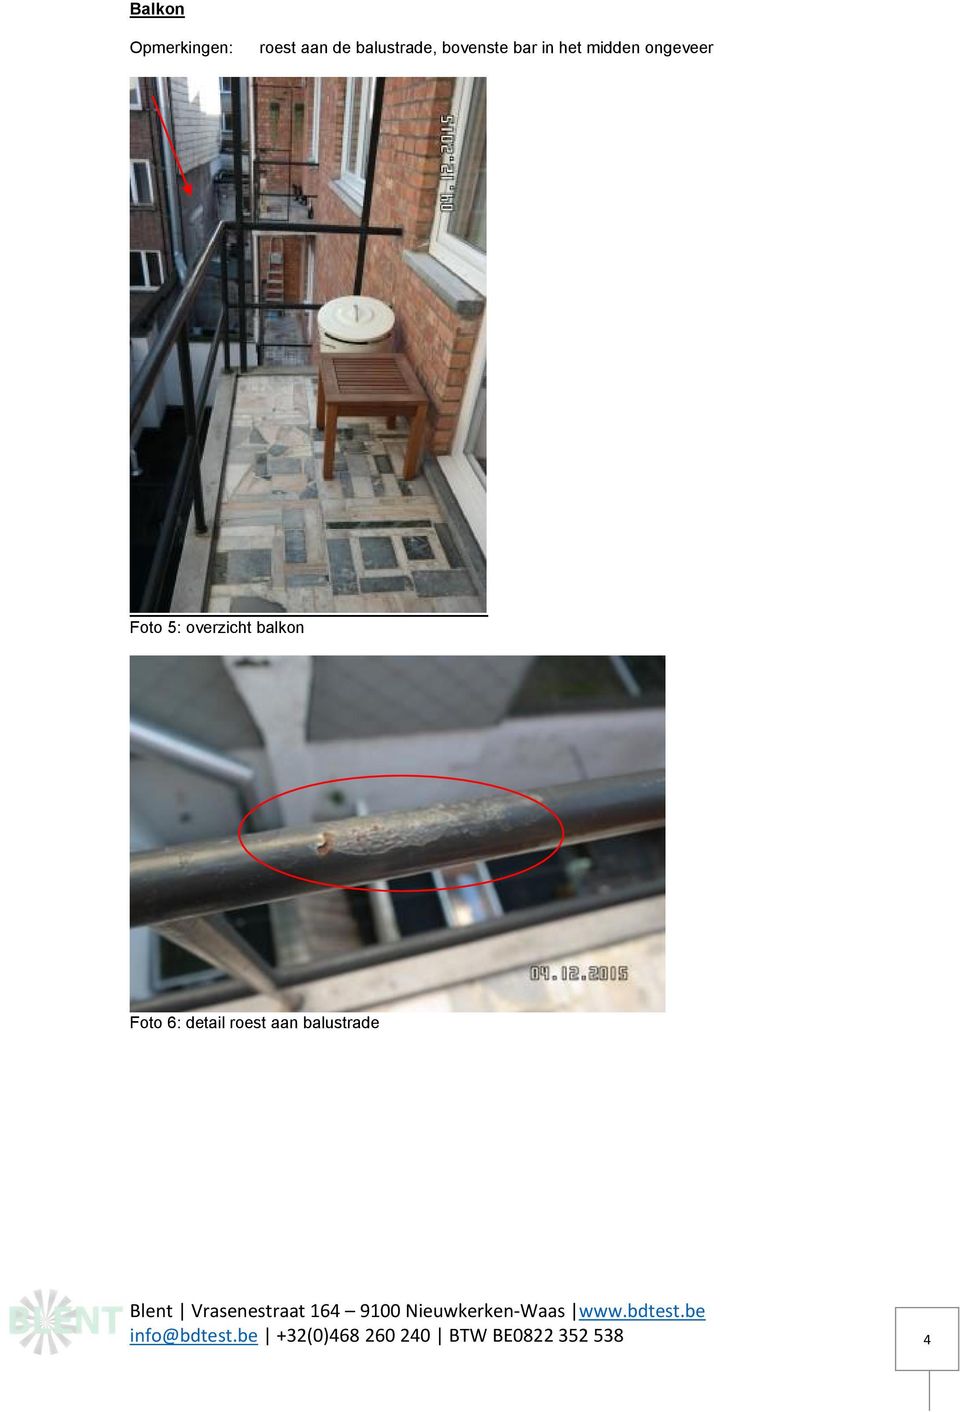 balkon Foto 6: detail roest aan balustrade